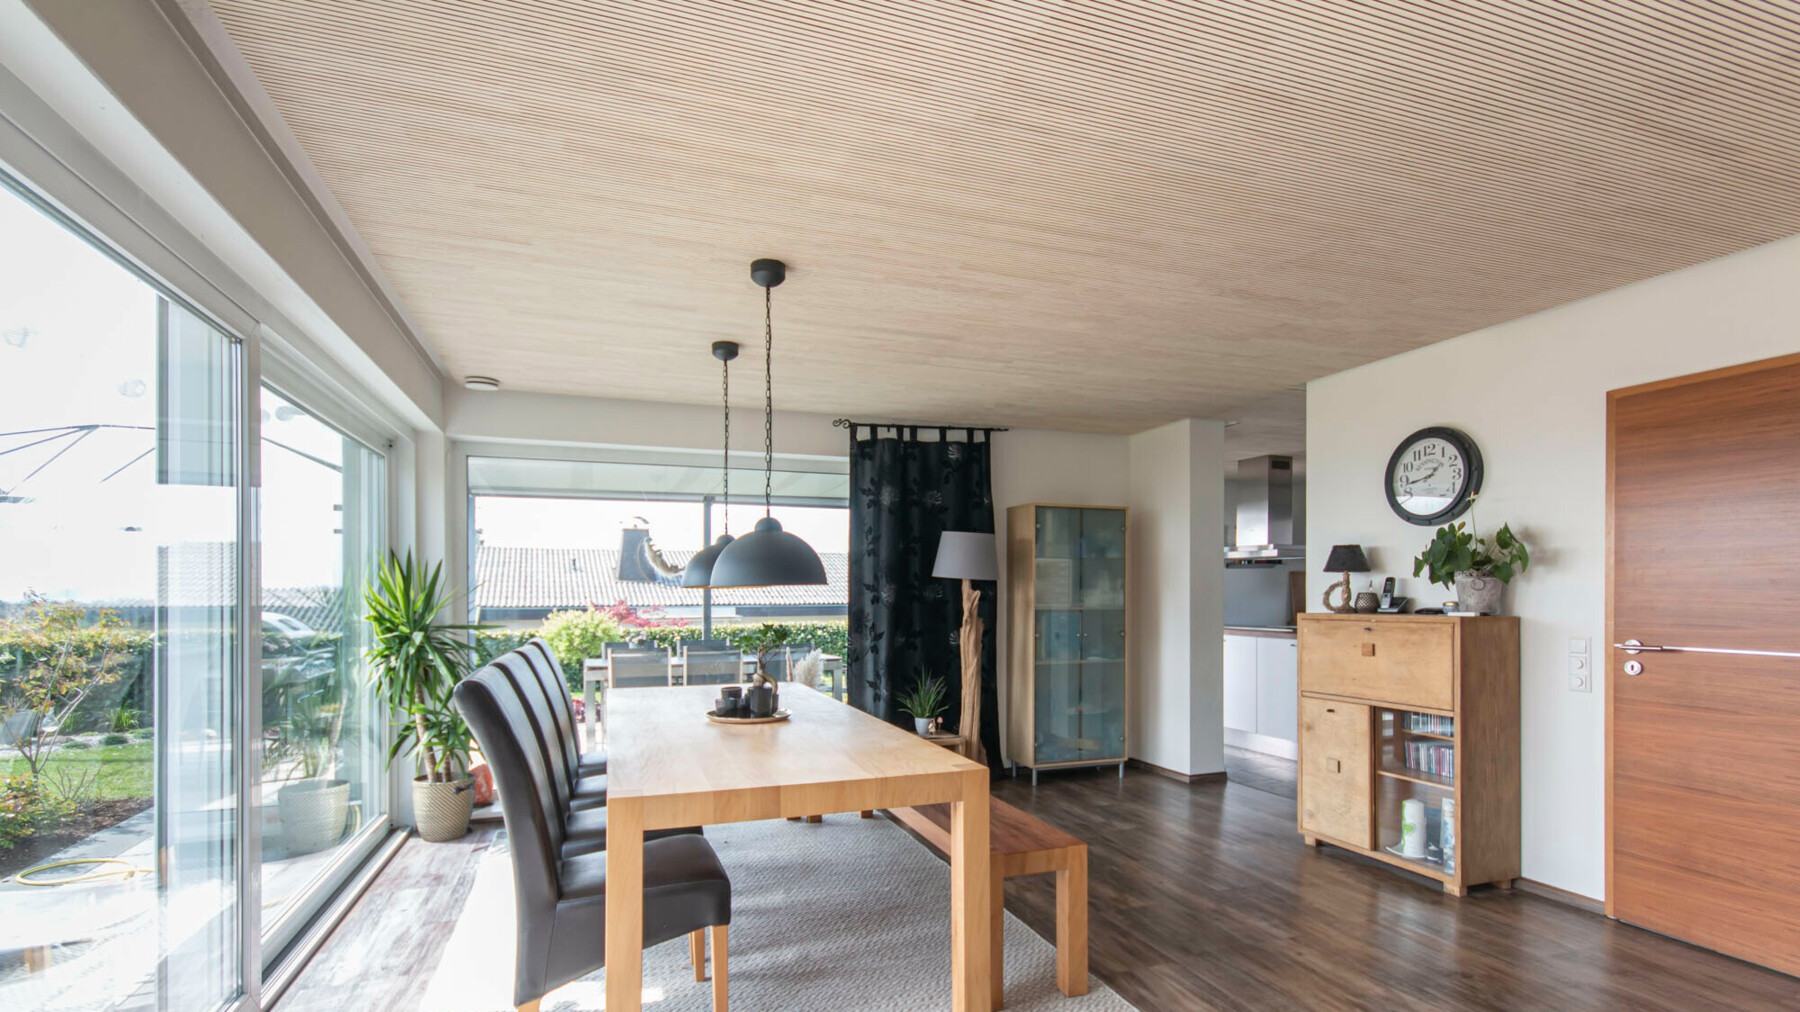 Raumakustisch wirksame Akustikpaneele aus Holz als Deckenverkleidung im Esszimmer in einem Einfamilienhaus bei Laufenburg